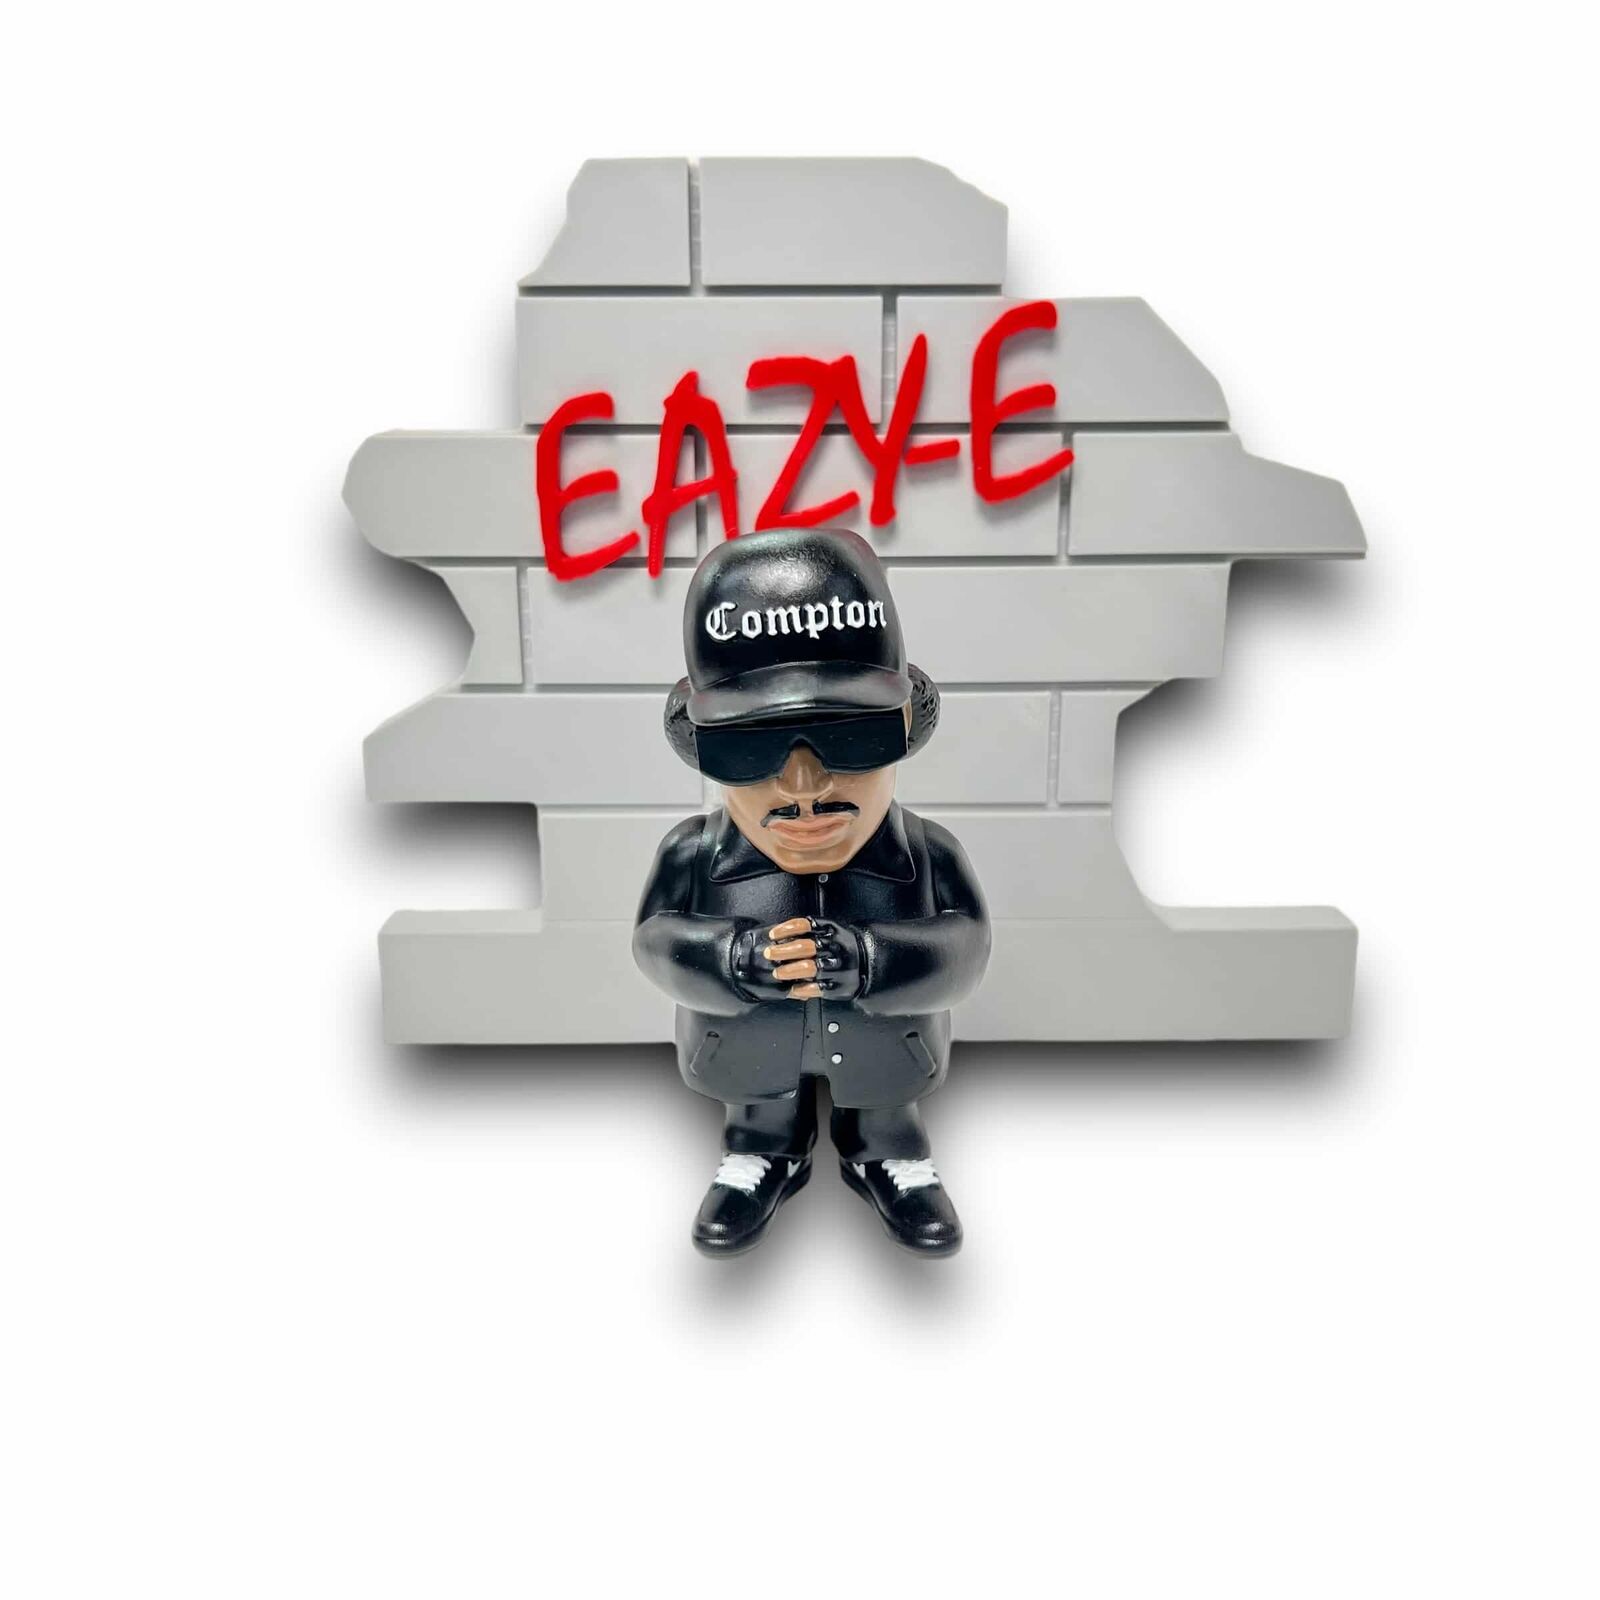 Eazy-E Figure and Brick Wall